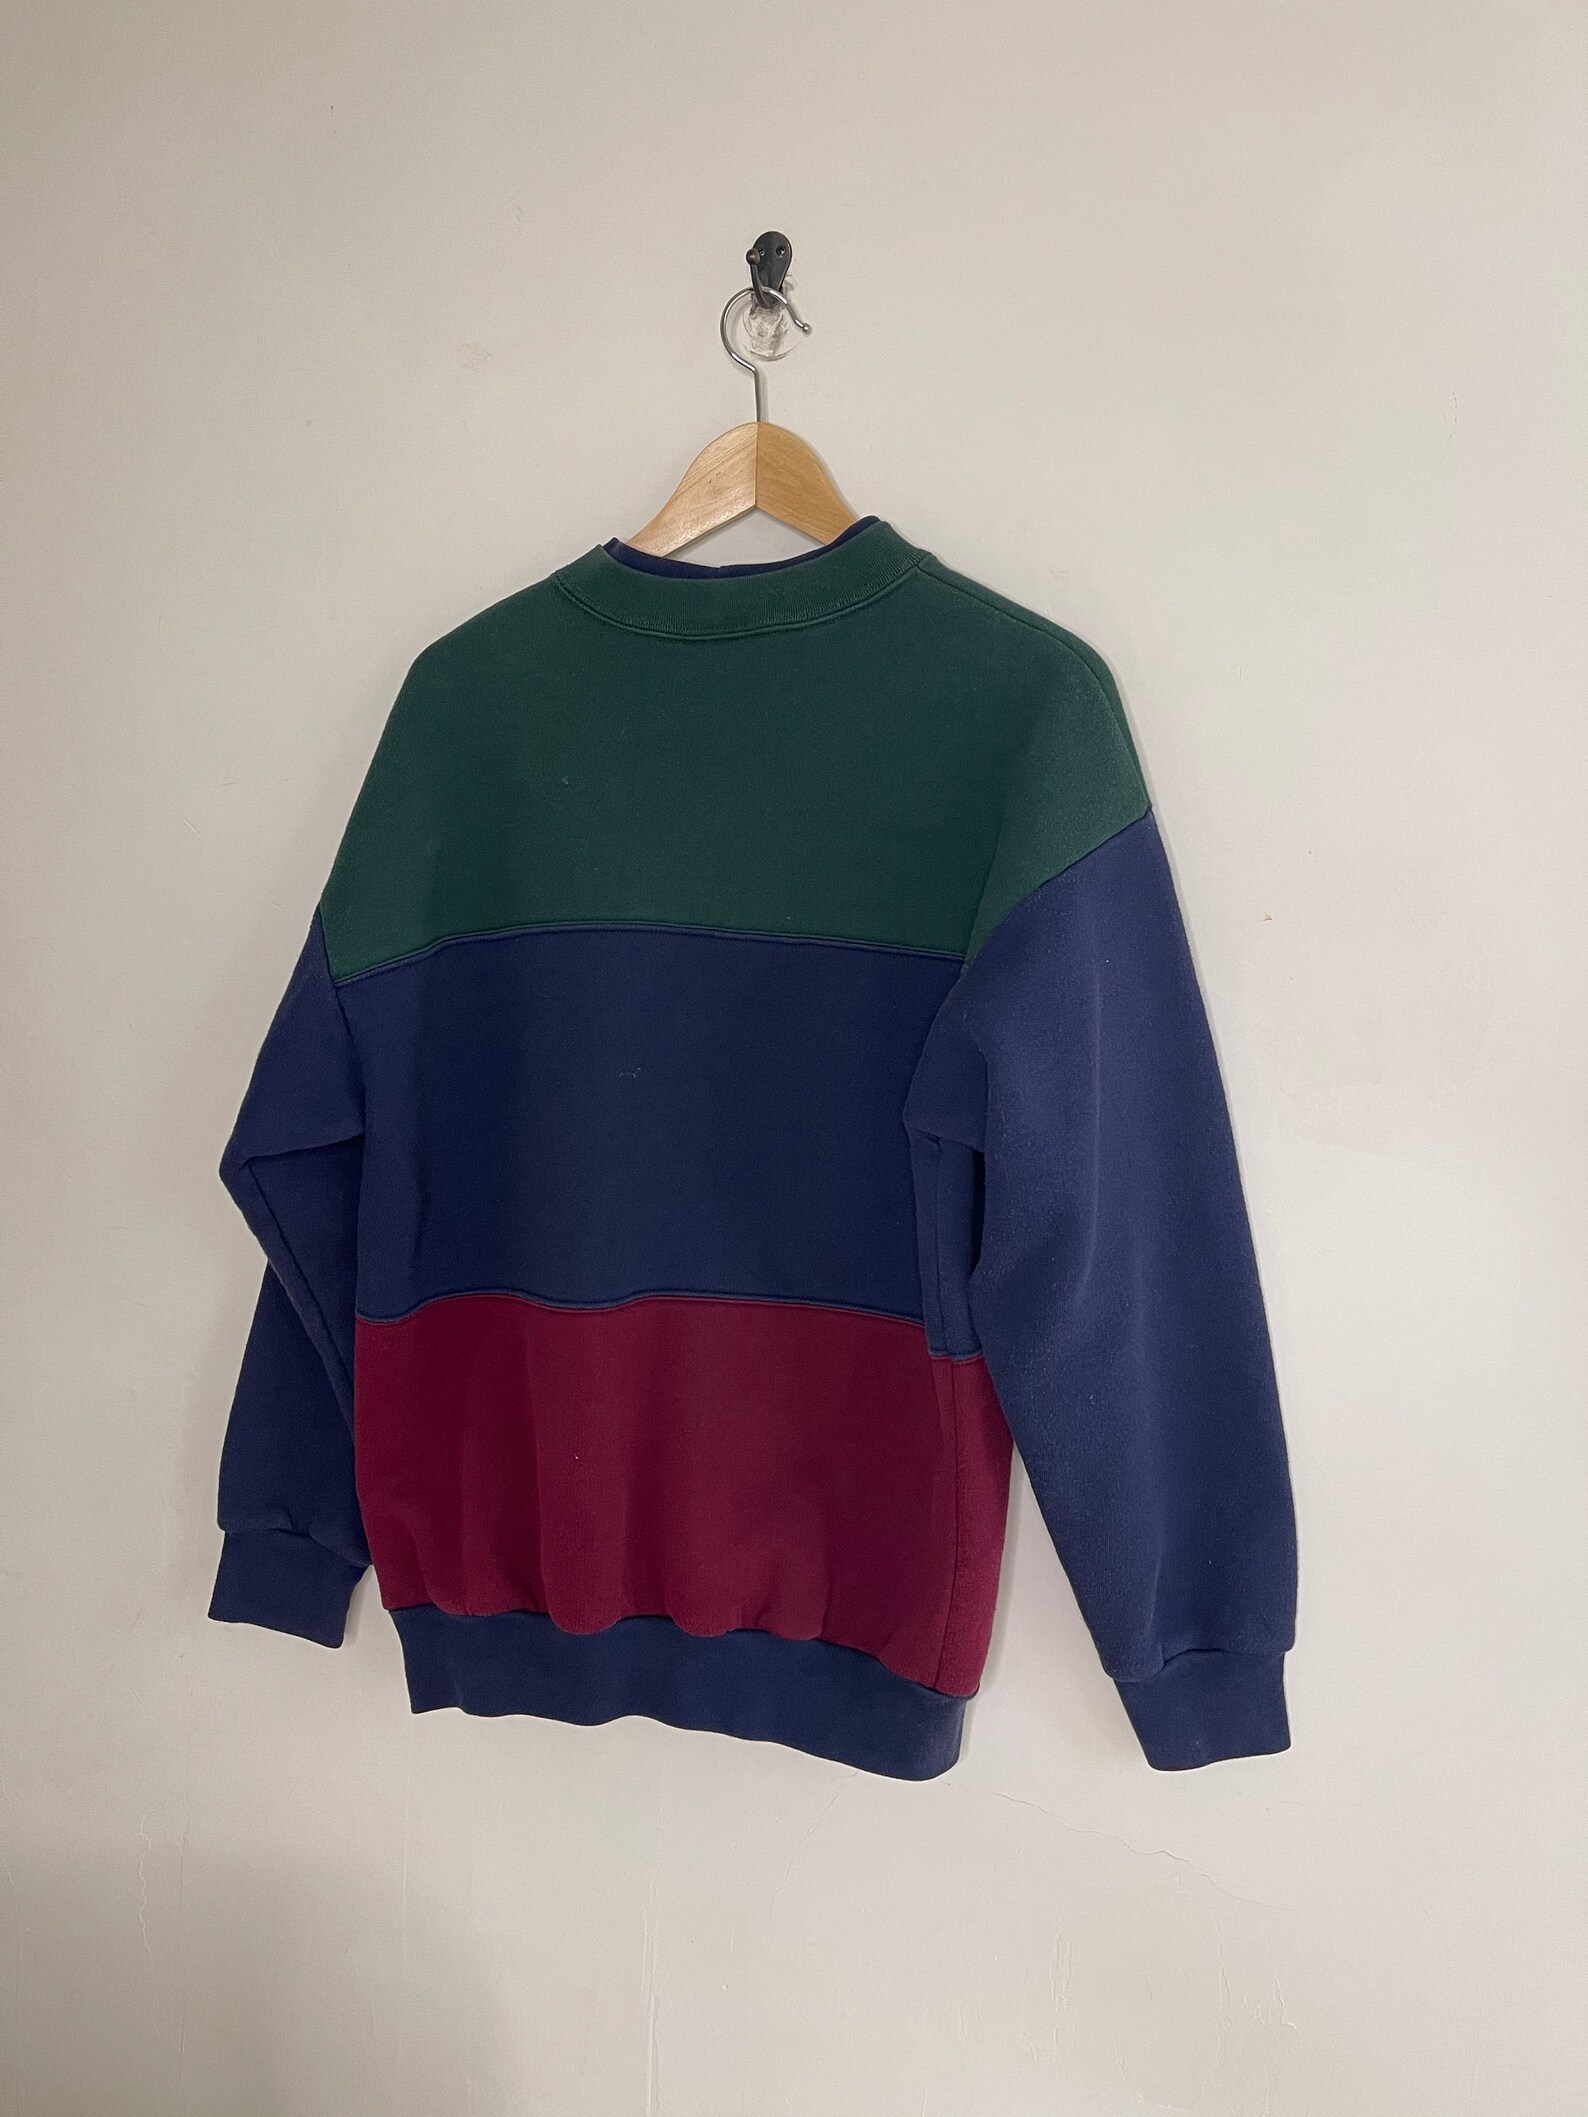 Vintage 90s color block sweater Crewneck striped multicolor | Etsy